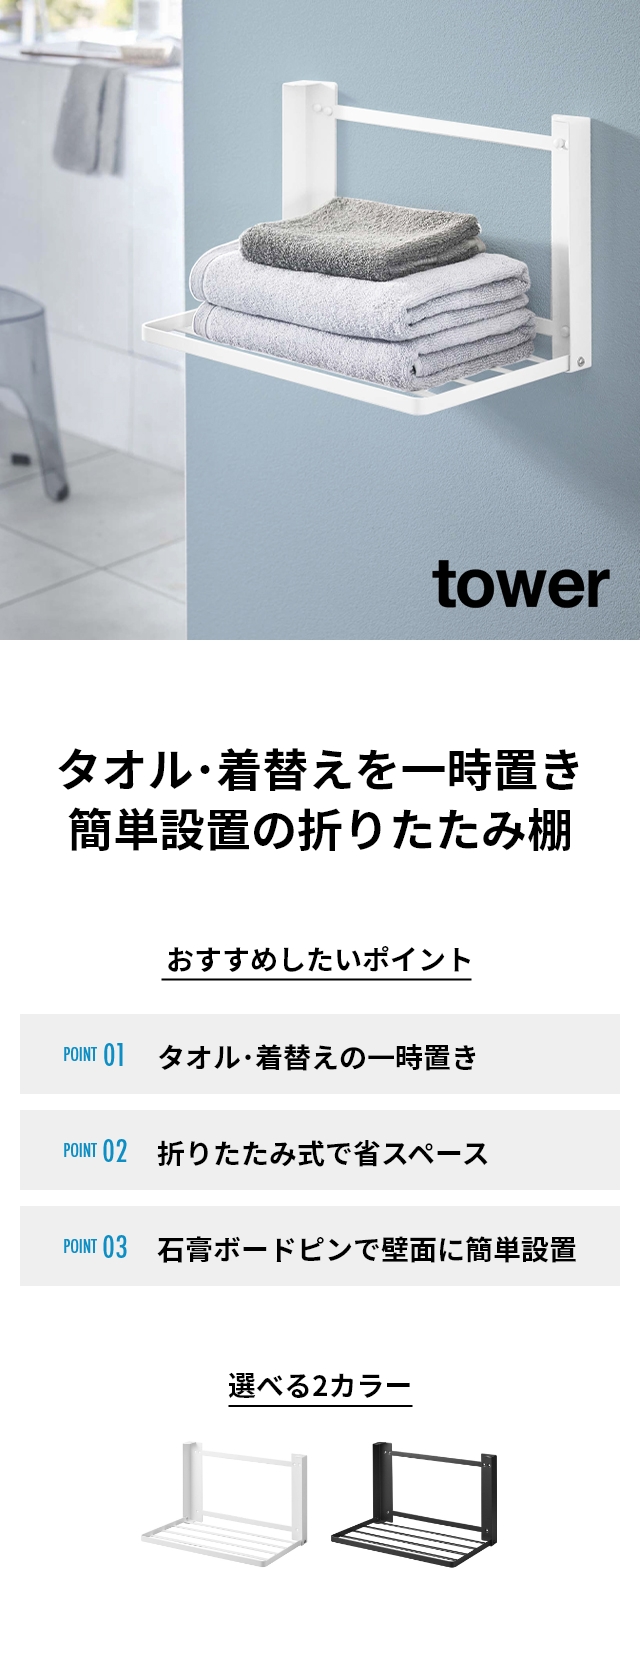 tower (タワー) 石こうボード壁対応 折り畳み棚